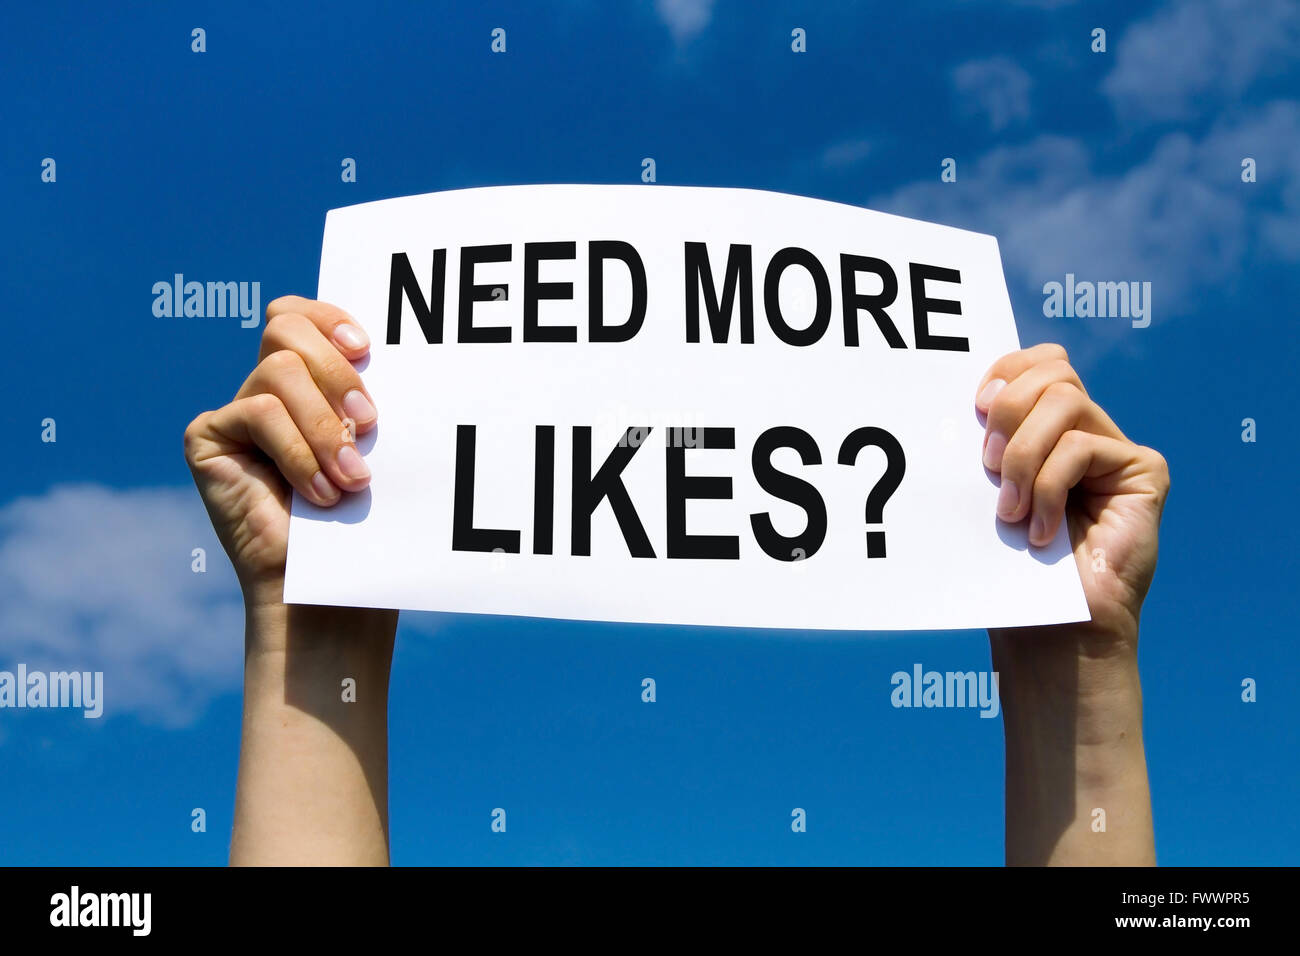 Hai bisogno di più gli piace, pubblicità su reti sociali di concetto Foto Stock